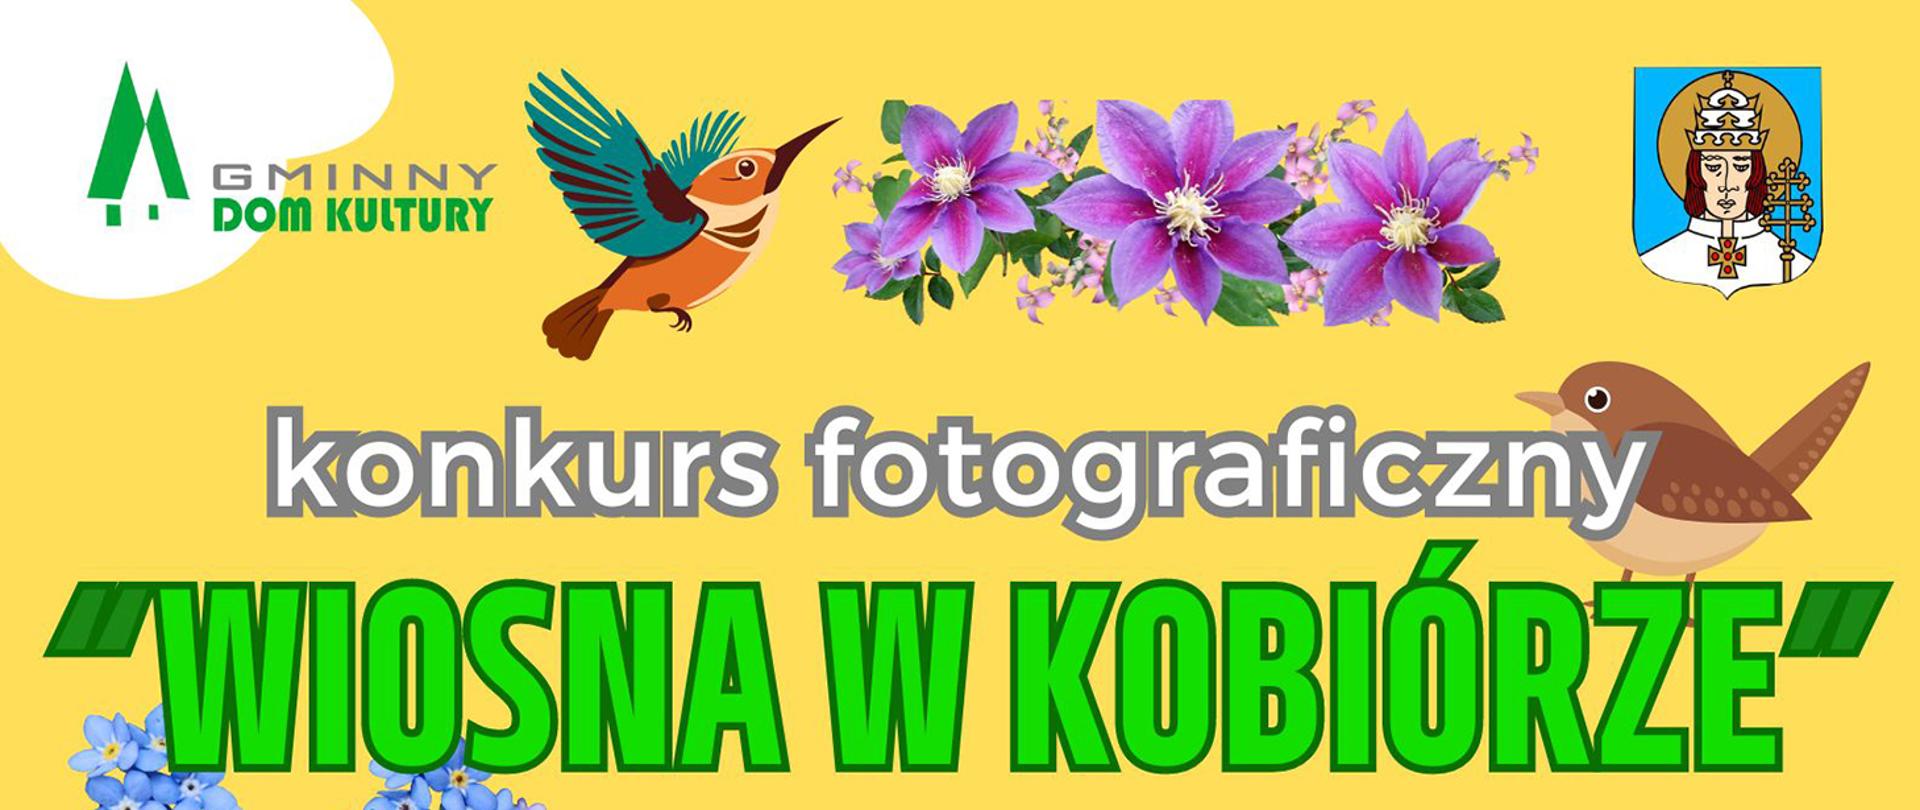 Informacja na żółtym tle o konkursie fotograficznym. W tle dwa ptaki i fioletowe kwiatki.